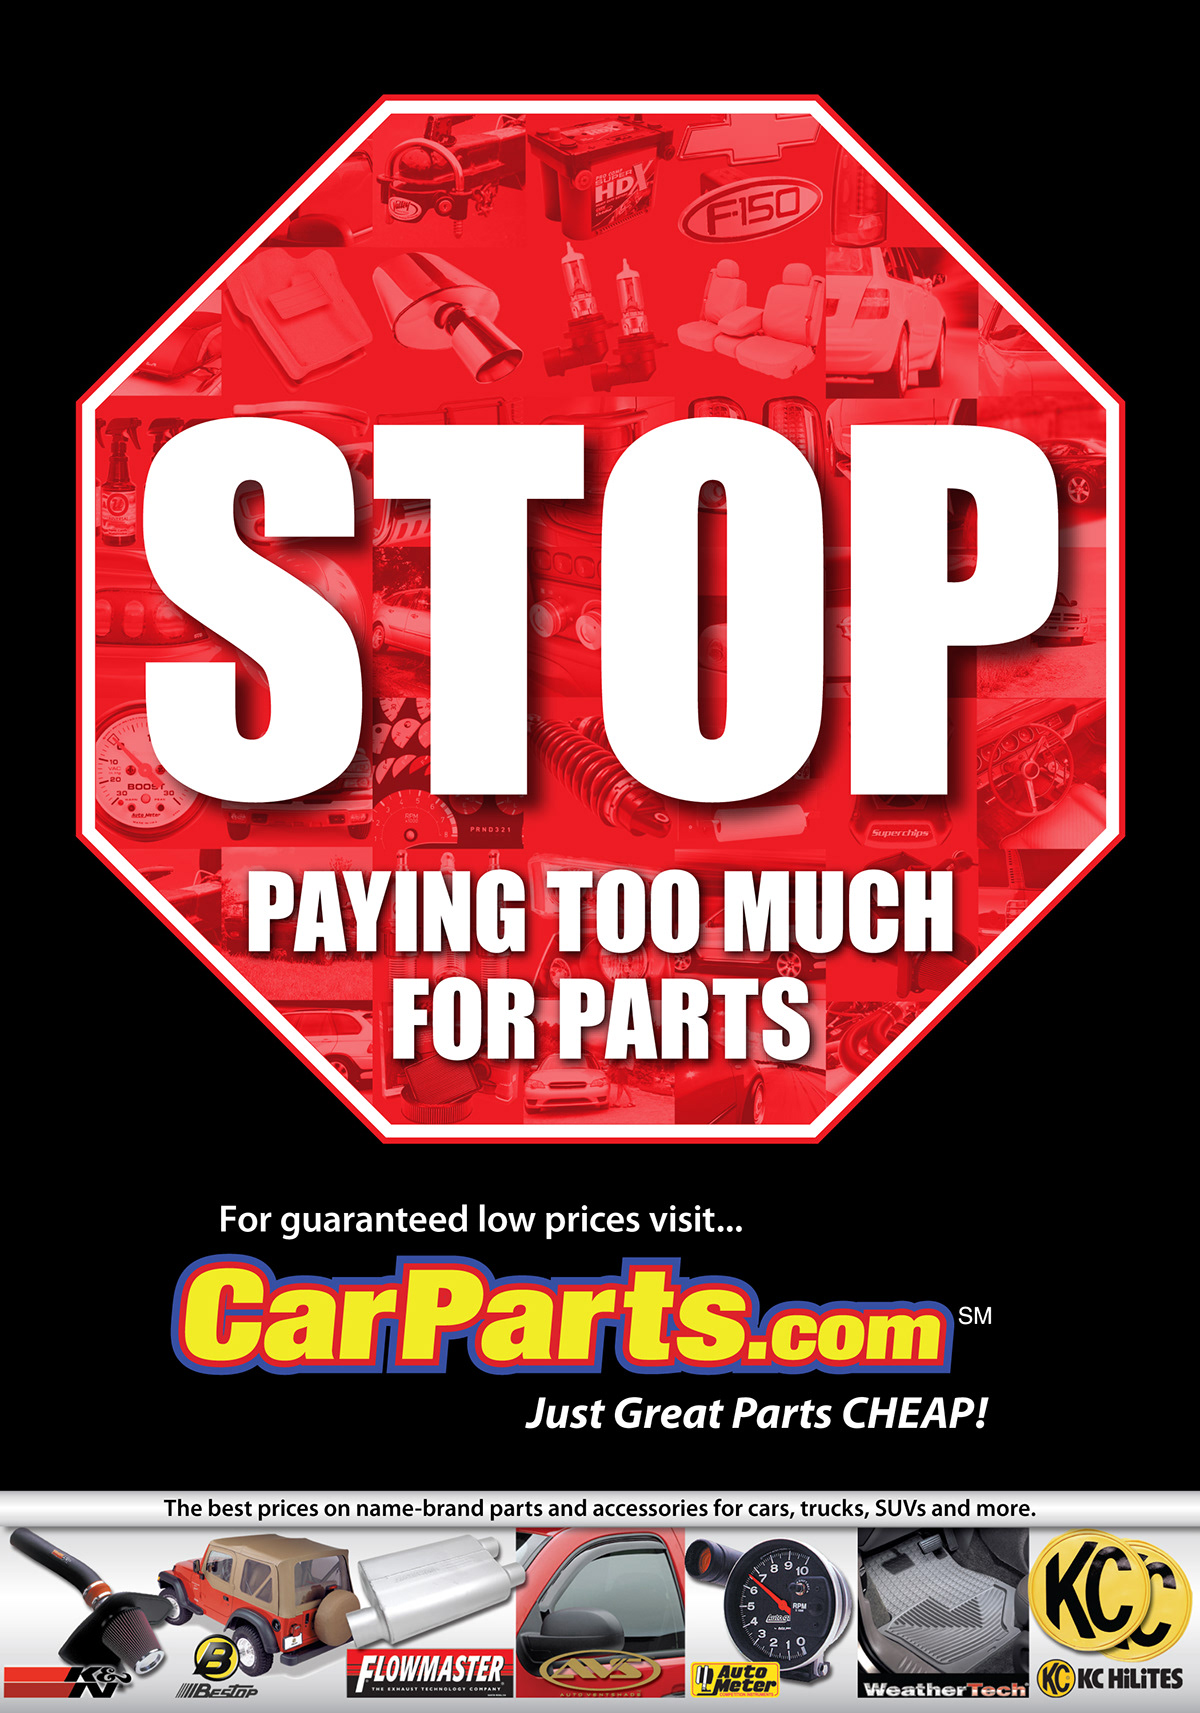 Carparts.com advertisement